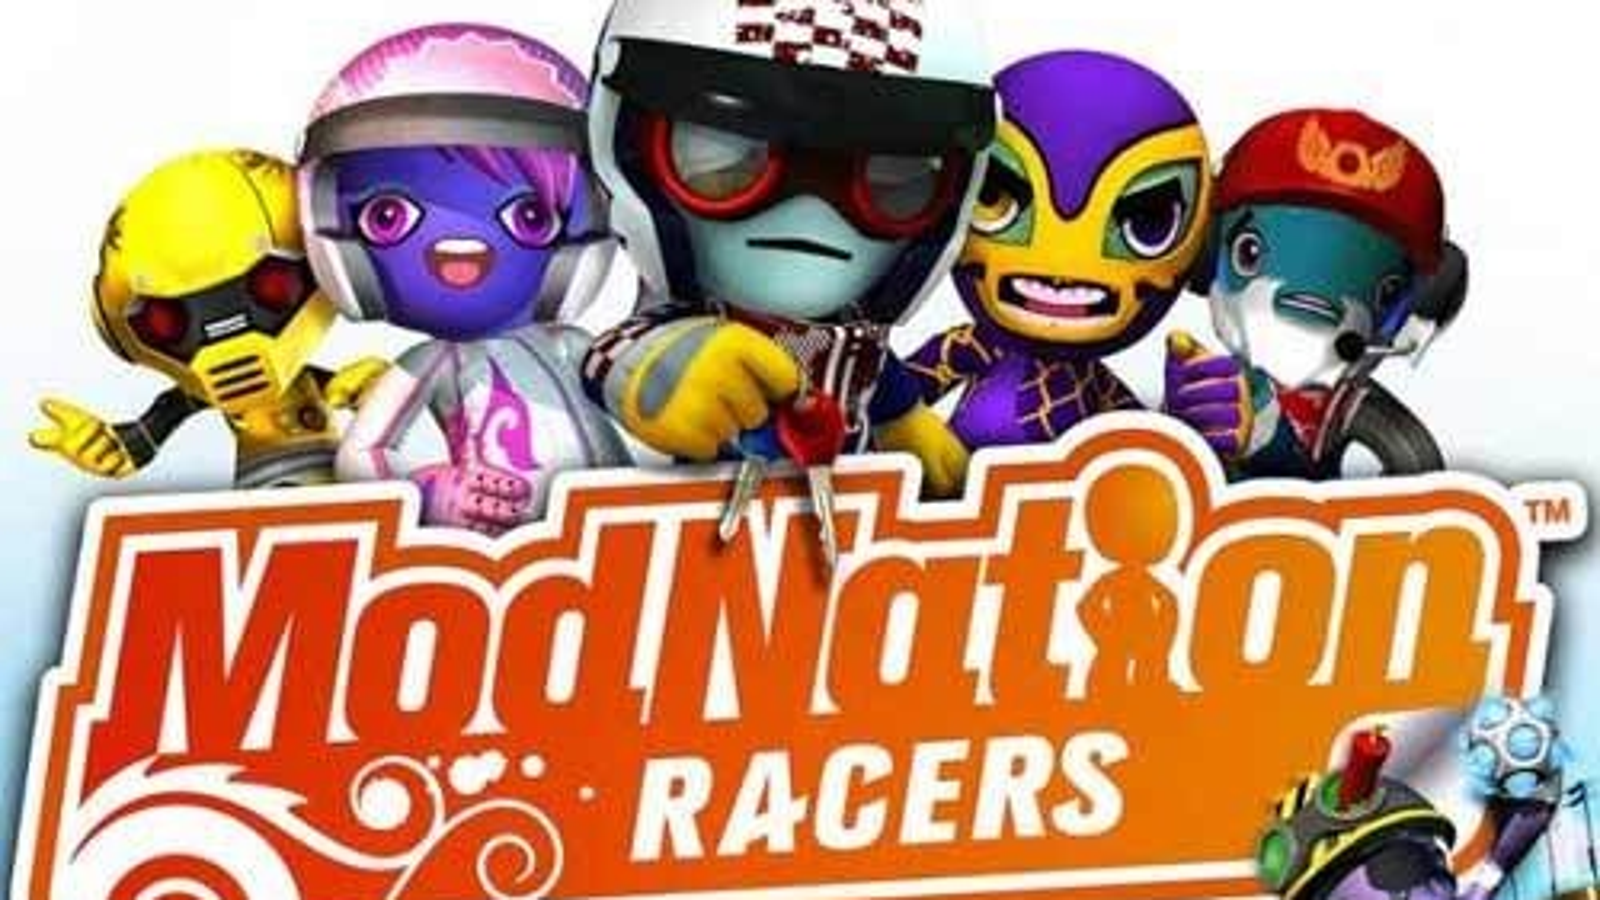 download mod nation racers